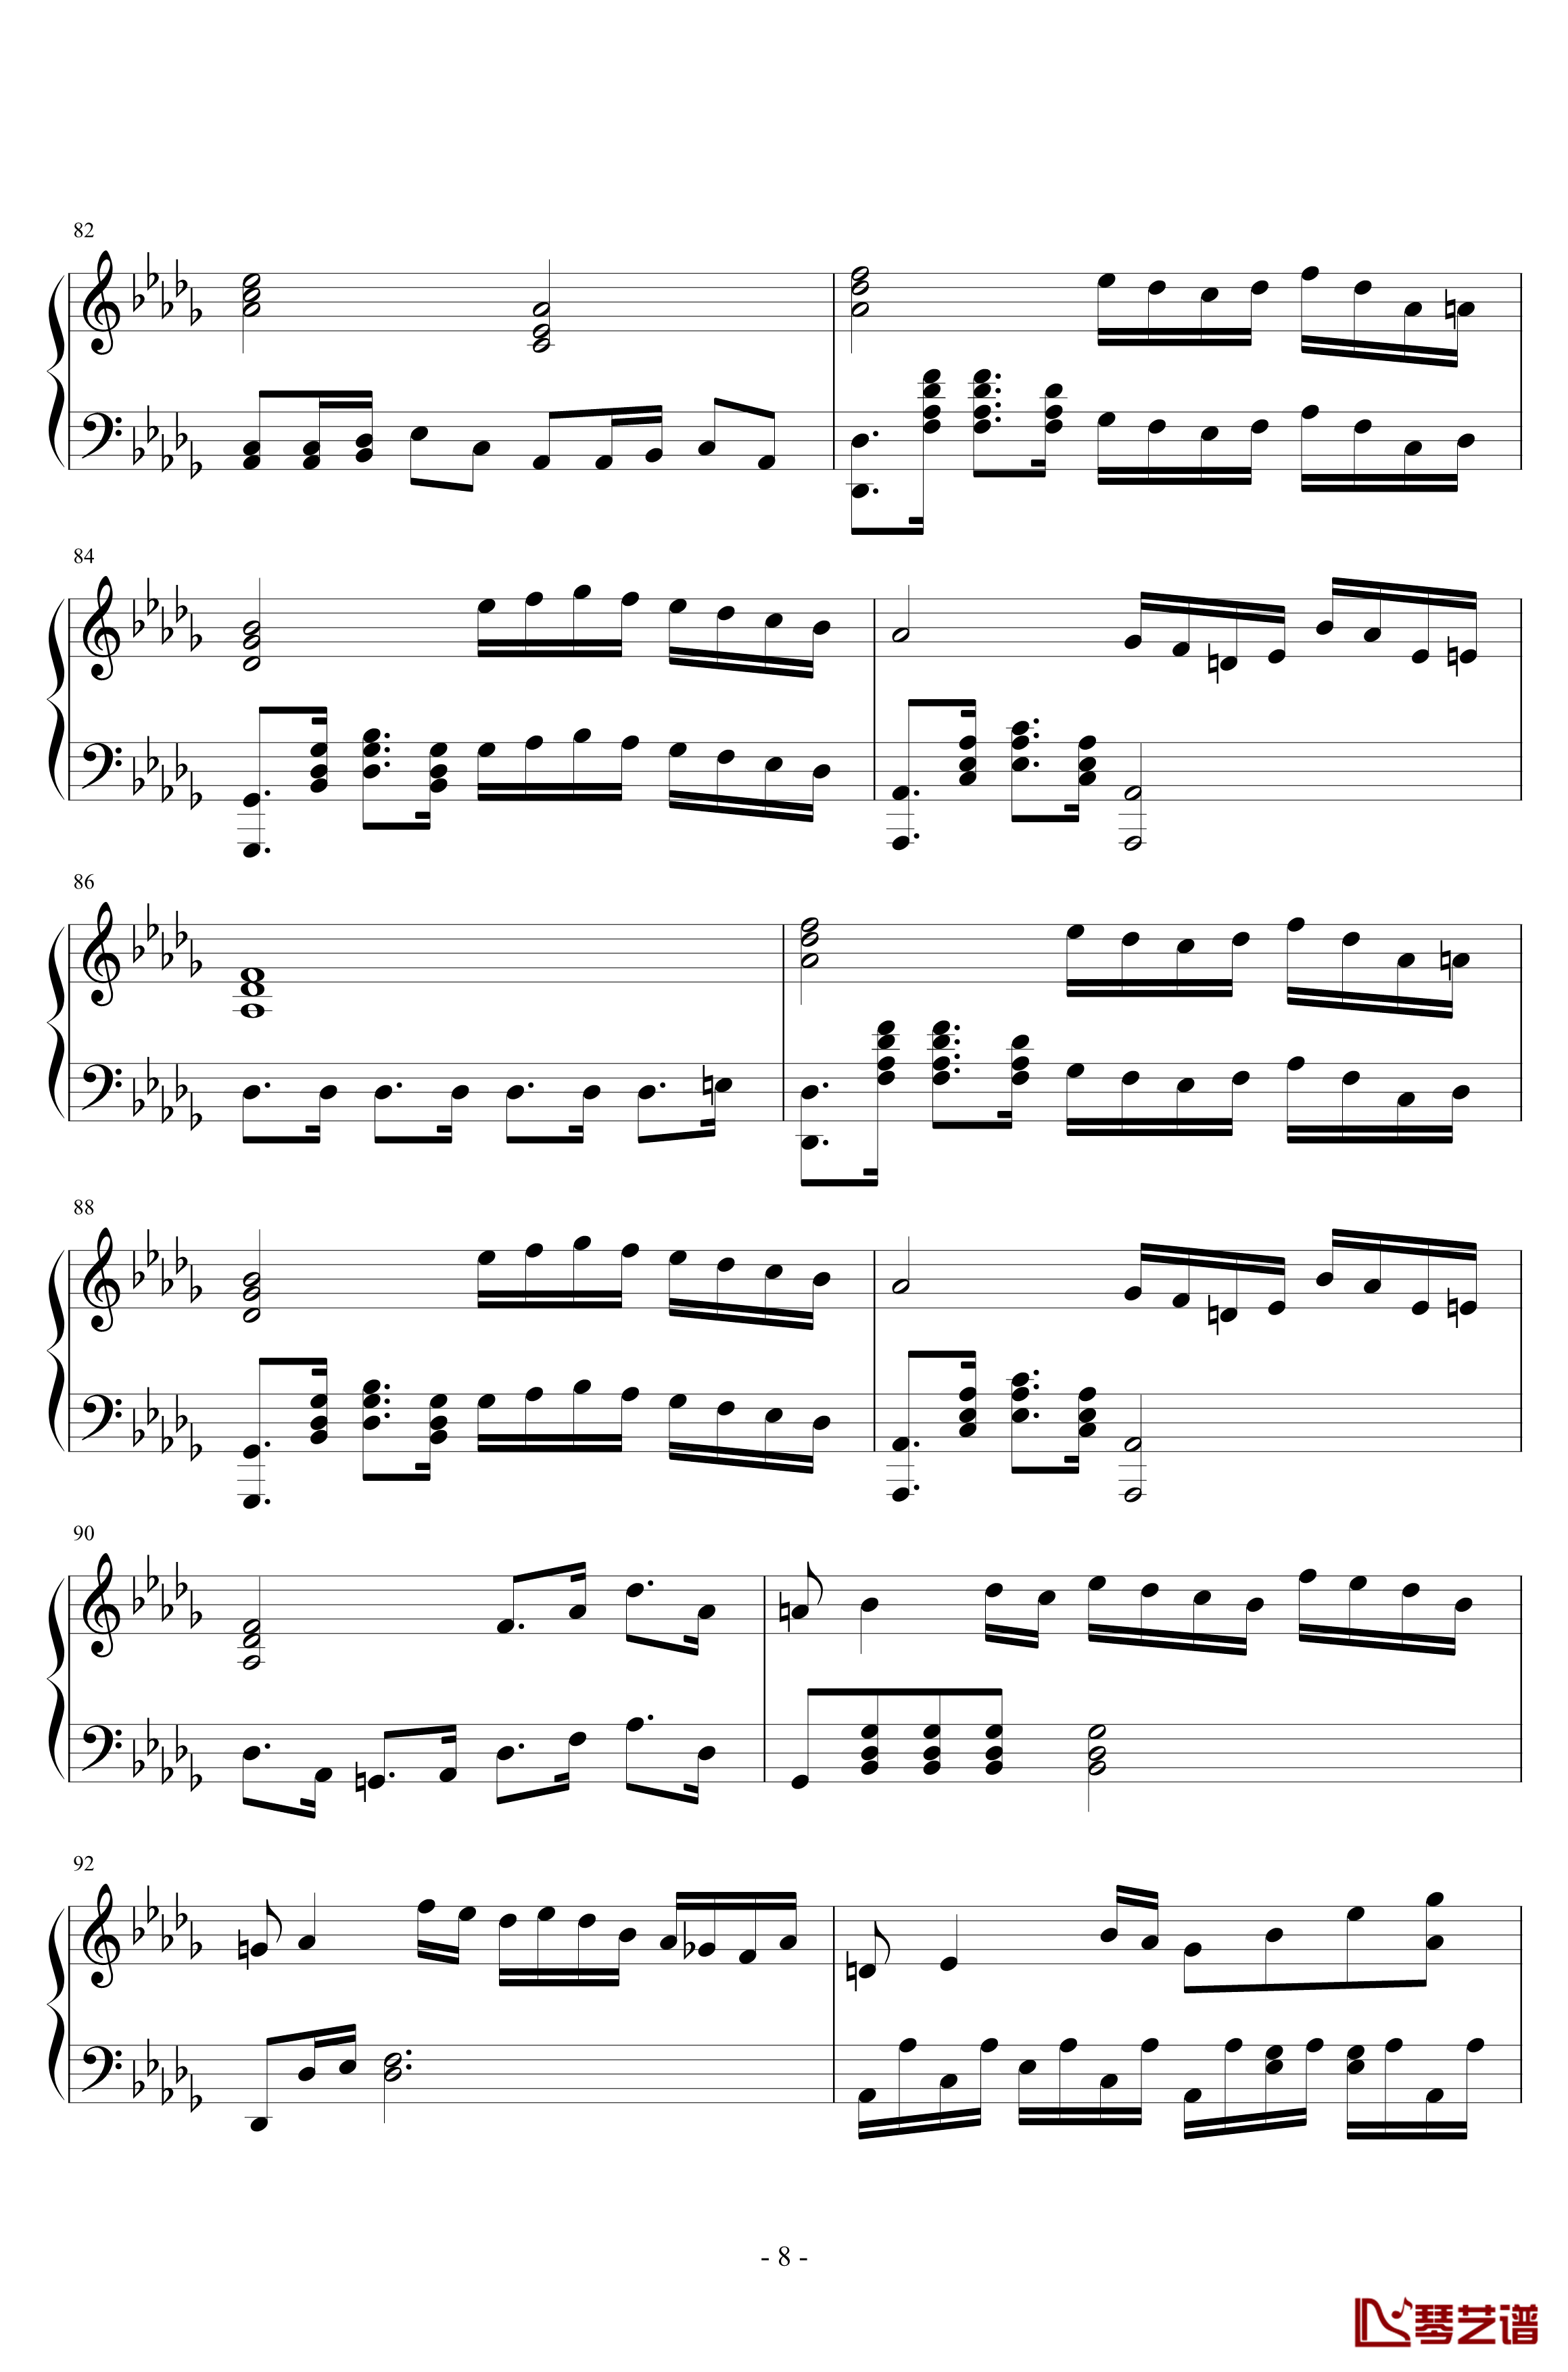 第二钢琴奏鸣曲第一乐章钢琴谱-nzh19348